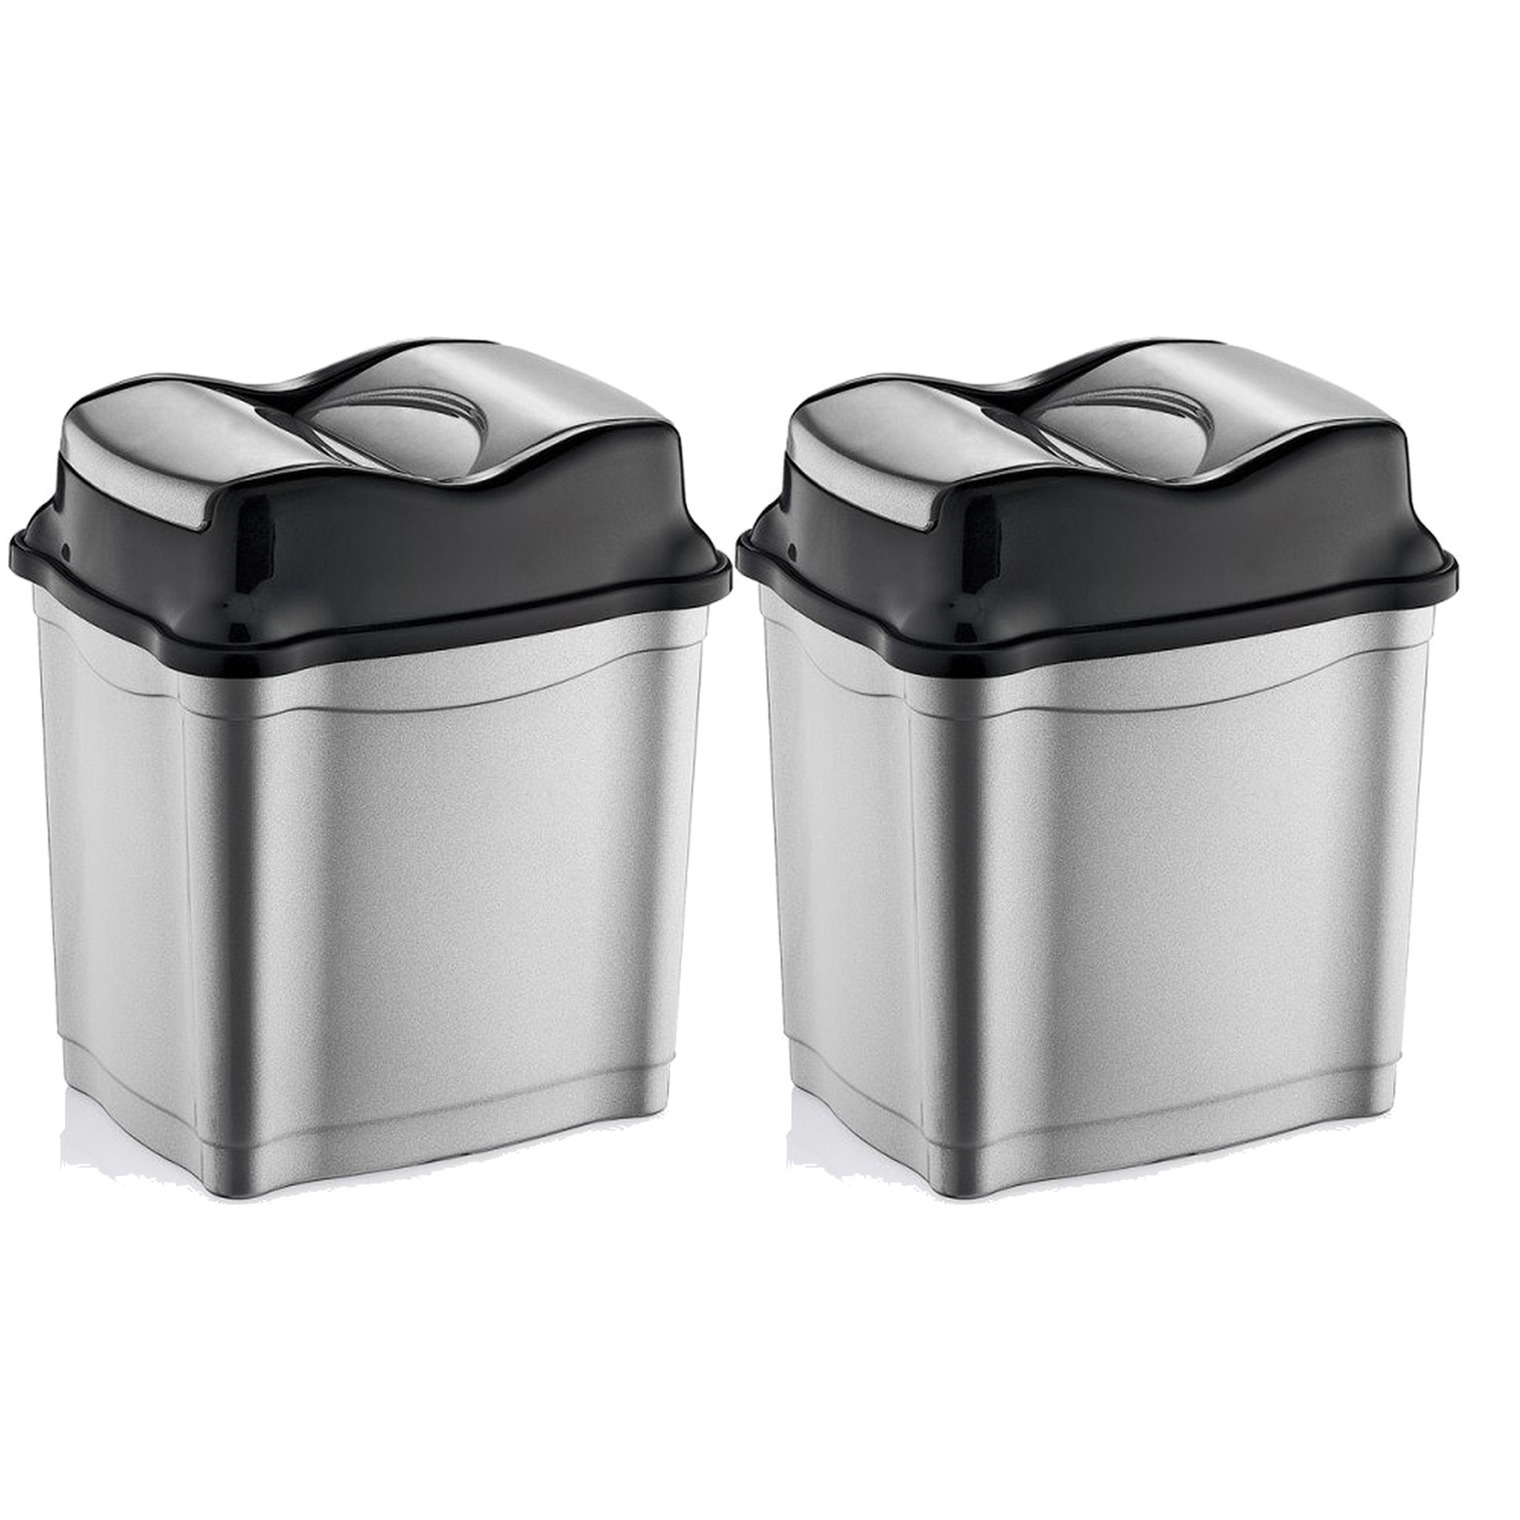 2x stuks zilver-zwarte kunststof vuilnisbakken 50 liter voor op kantoor